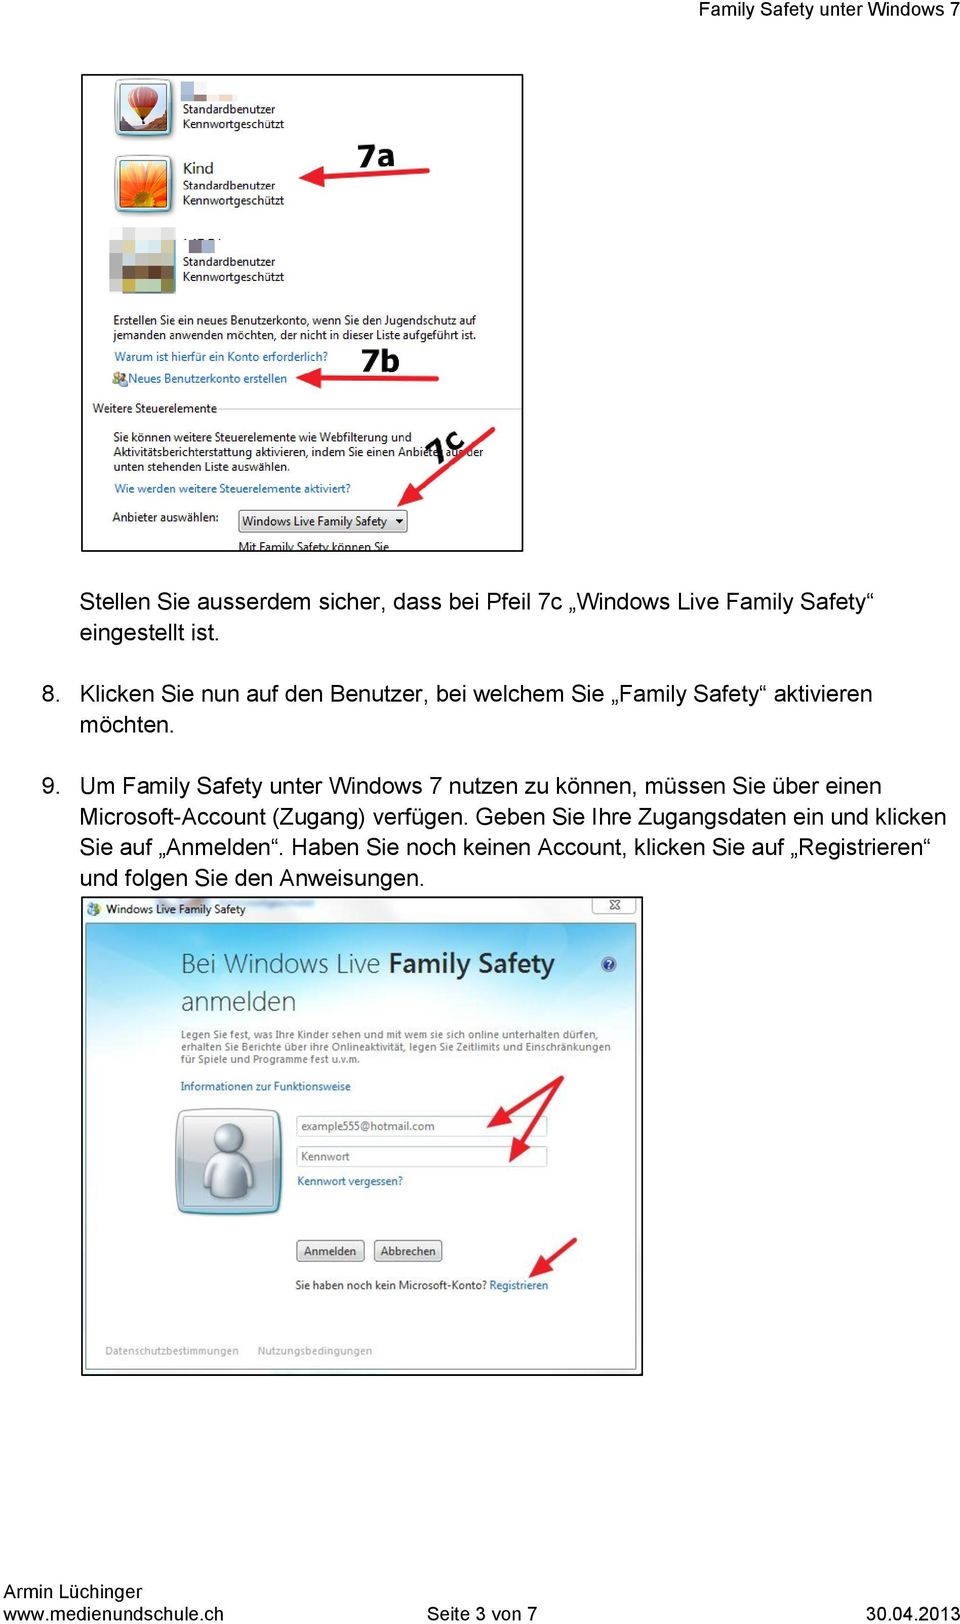 Um Family Safety unter Windows 7 nutzen zu können, müssen Sie über einen Microsoft-Account (Zugang) verfügen.